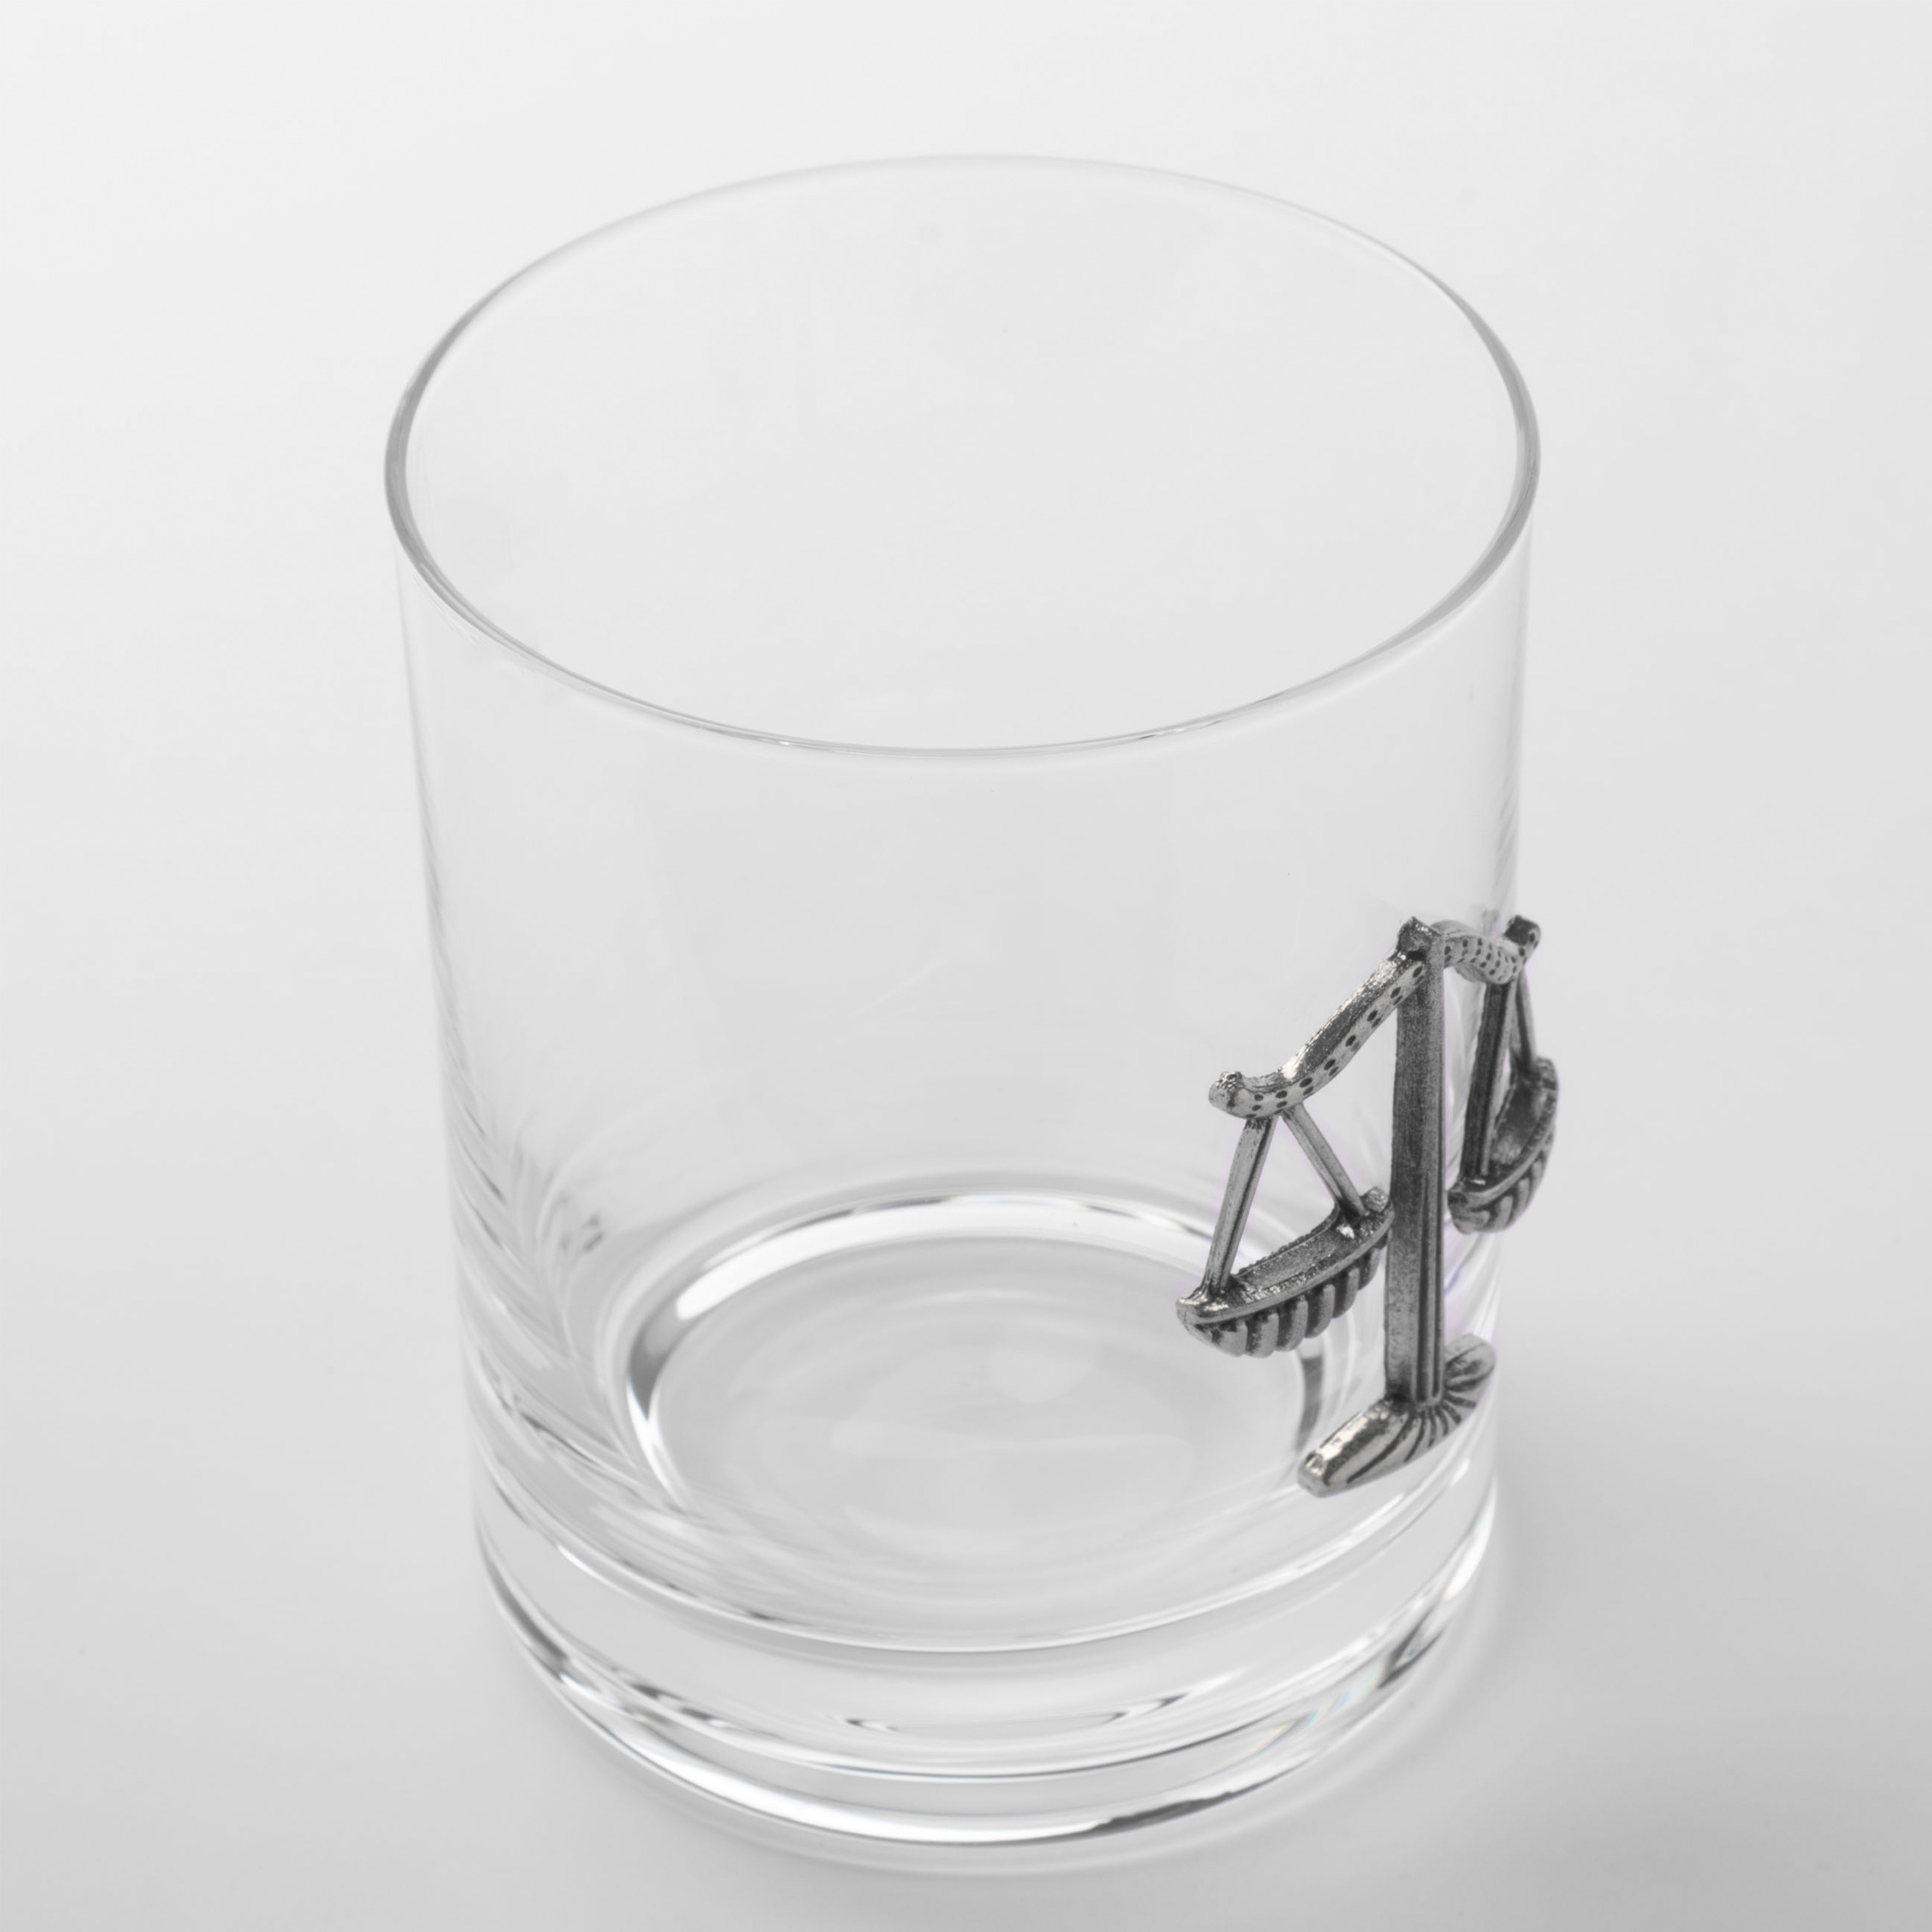 Стакан для виски, 10 см, 340 мл, стекло/металл, серебристый, Весы, Zodiac изображение № 3